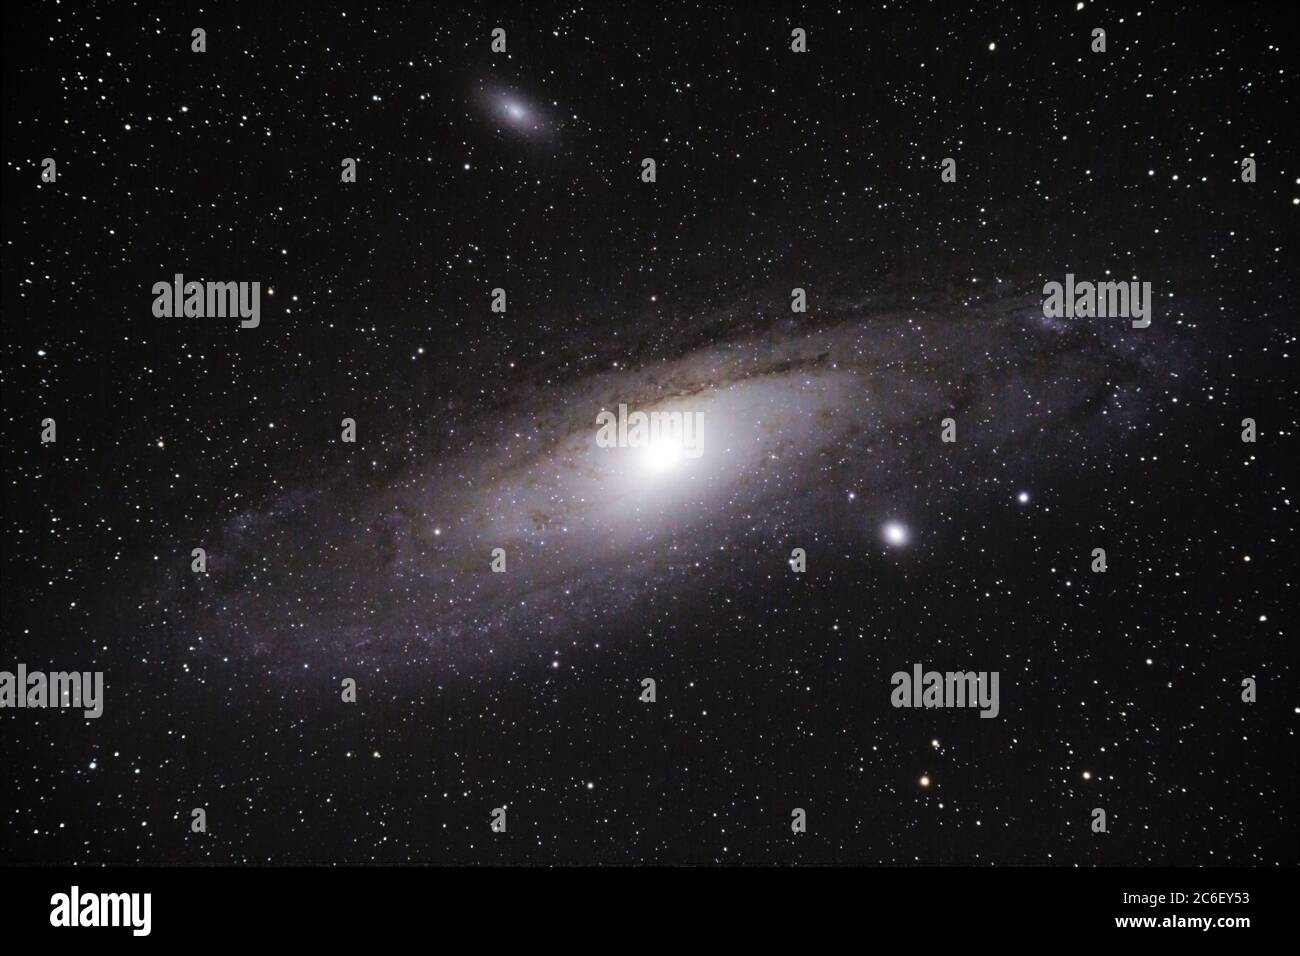 La Galaxia de Adromeda, vista a través de un telescopio refractor de 80 mm  usando una cámara réflex y aproximadamente 1 hora de tiempo de exposición.  La Galaxia de Andrómeda es una